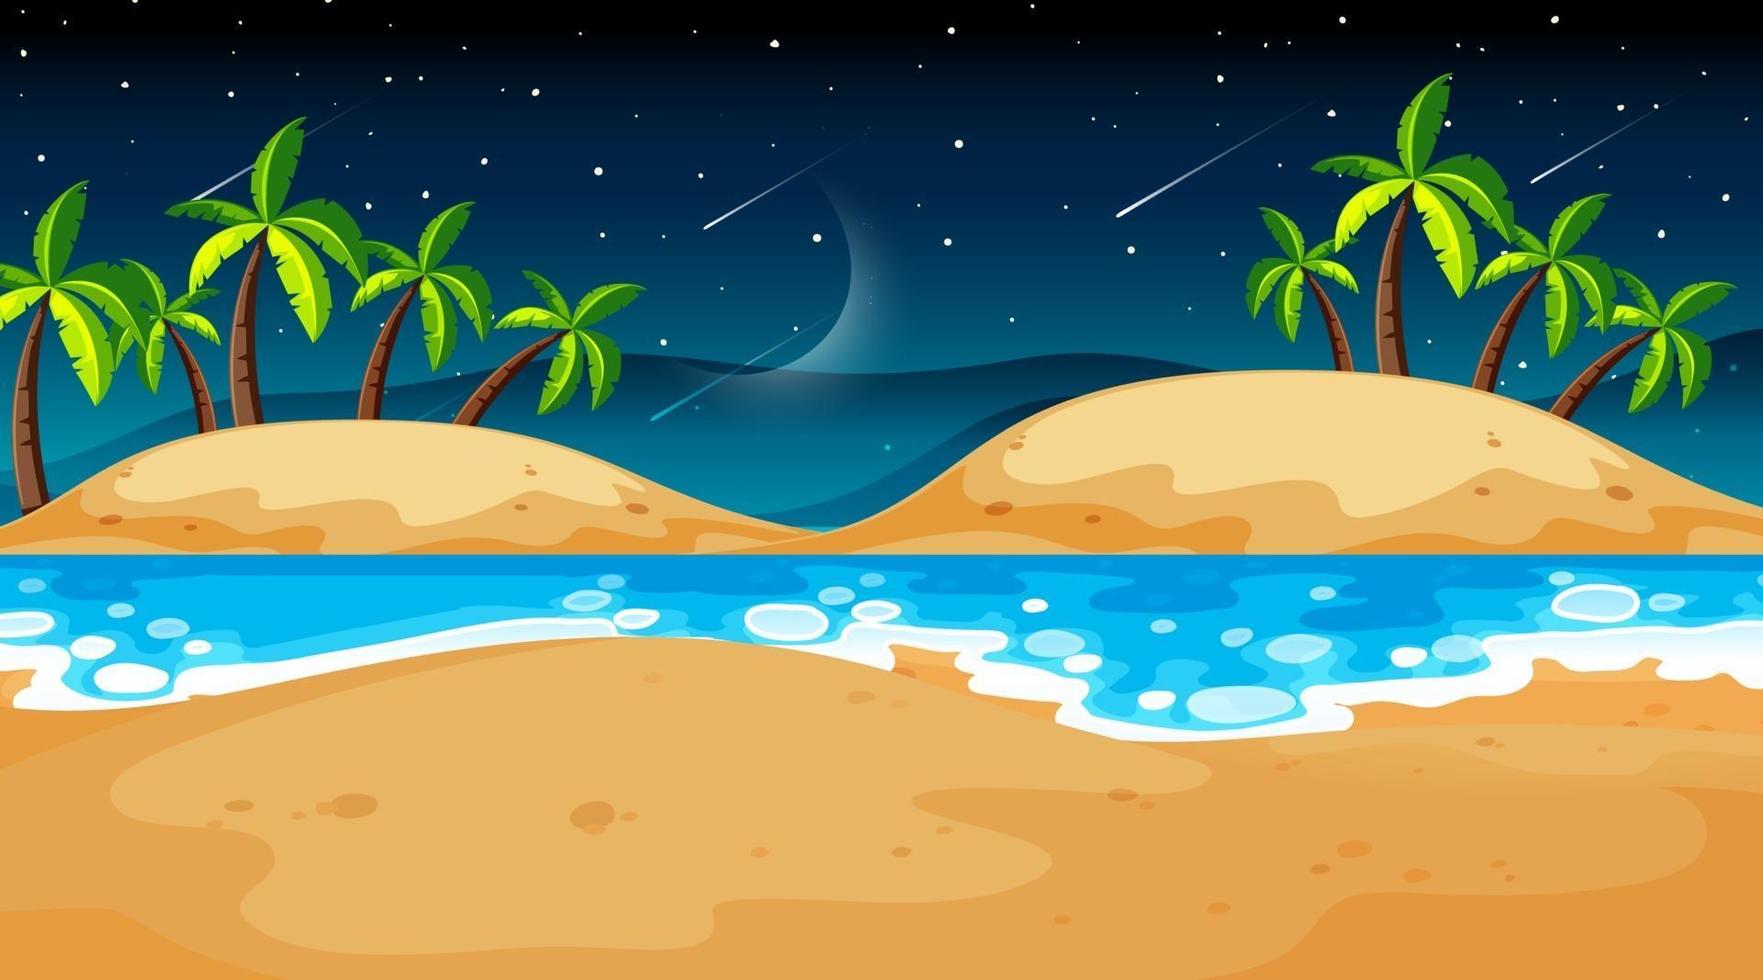 scena di paesaggio spiaggia tropicale di notte vettore